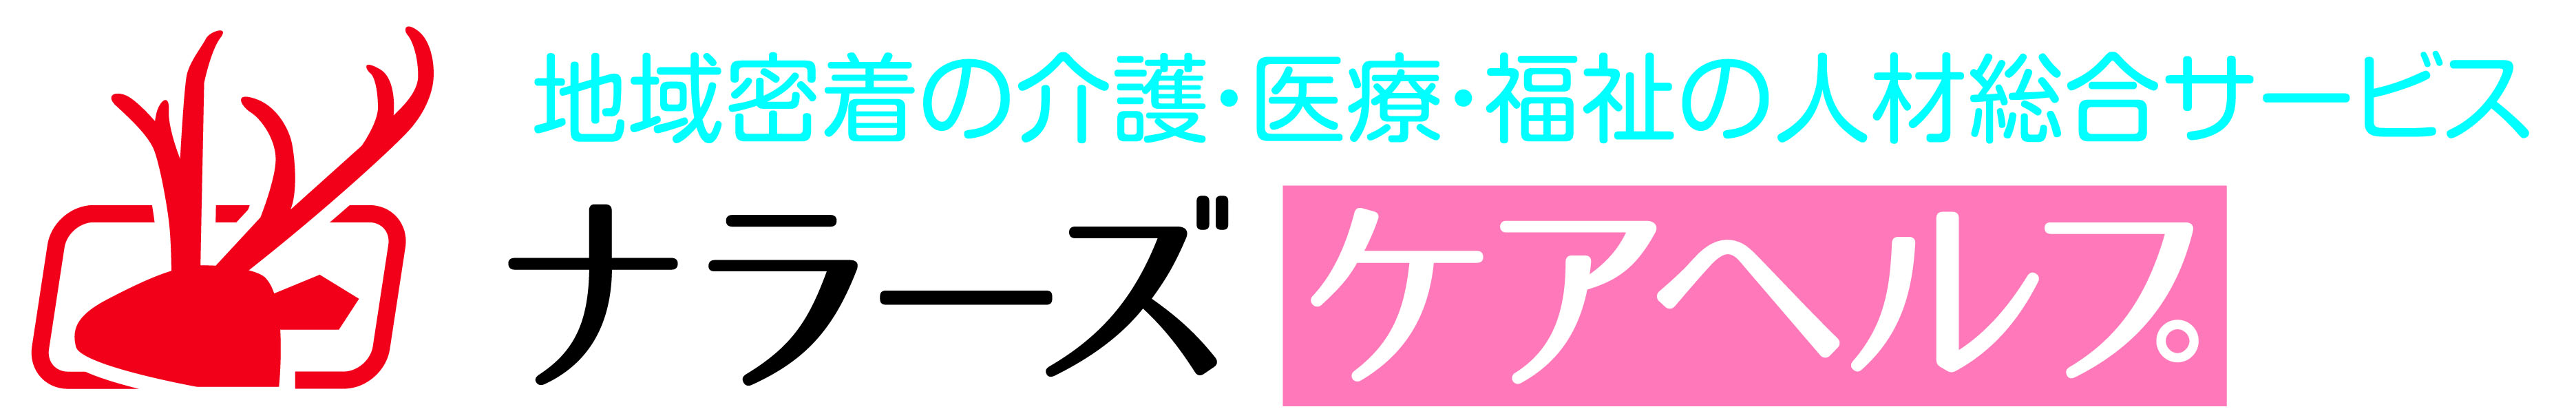 名刺ロゴ.jpg